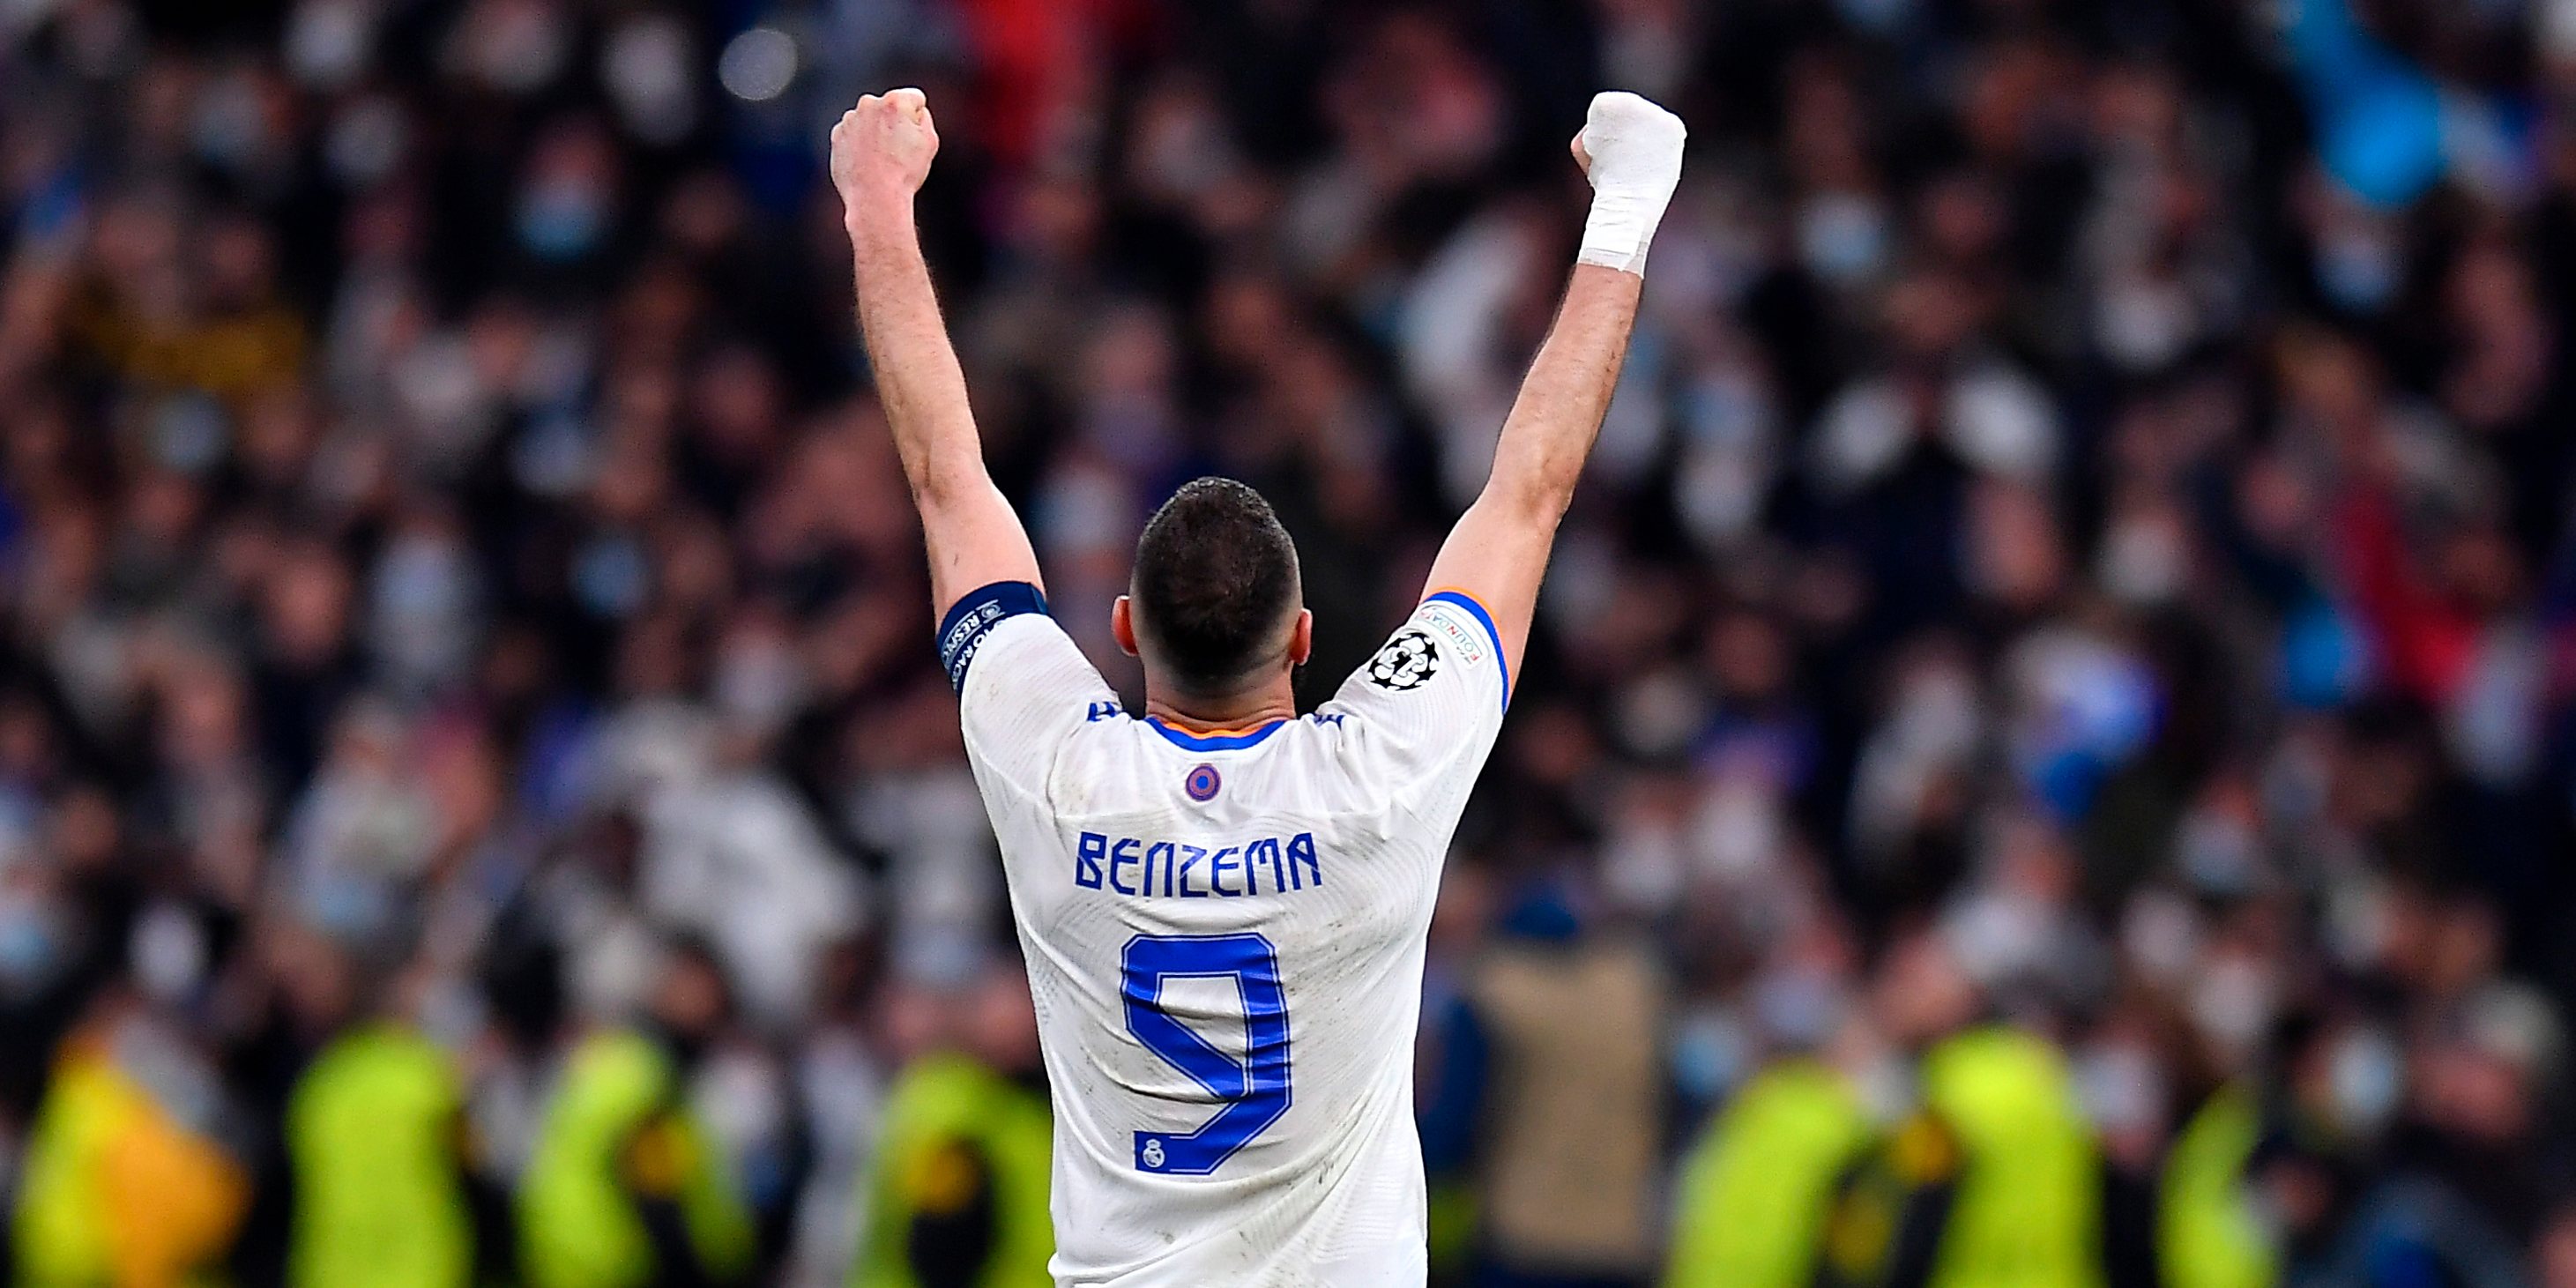 Benzema: motivos para ser eleito o melhor jogador do mundo